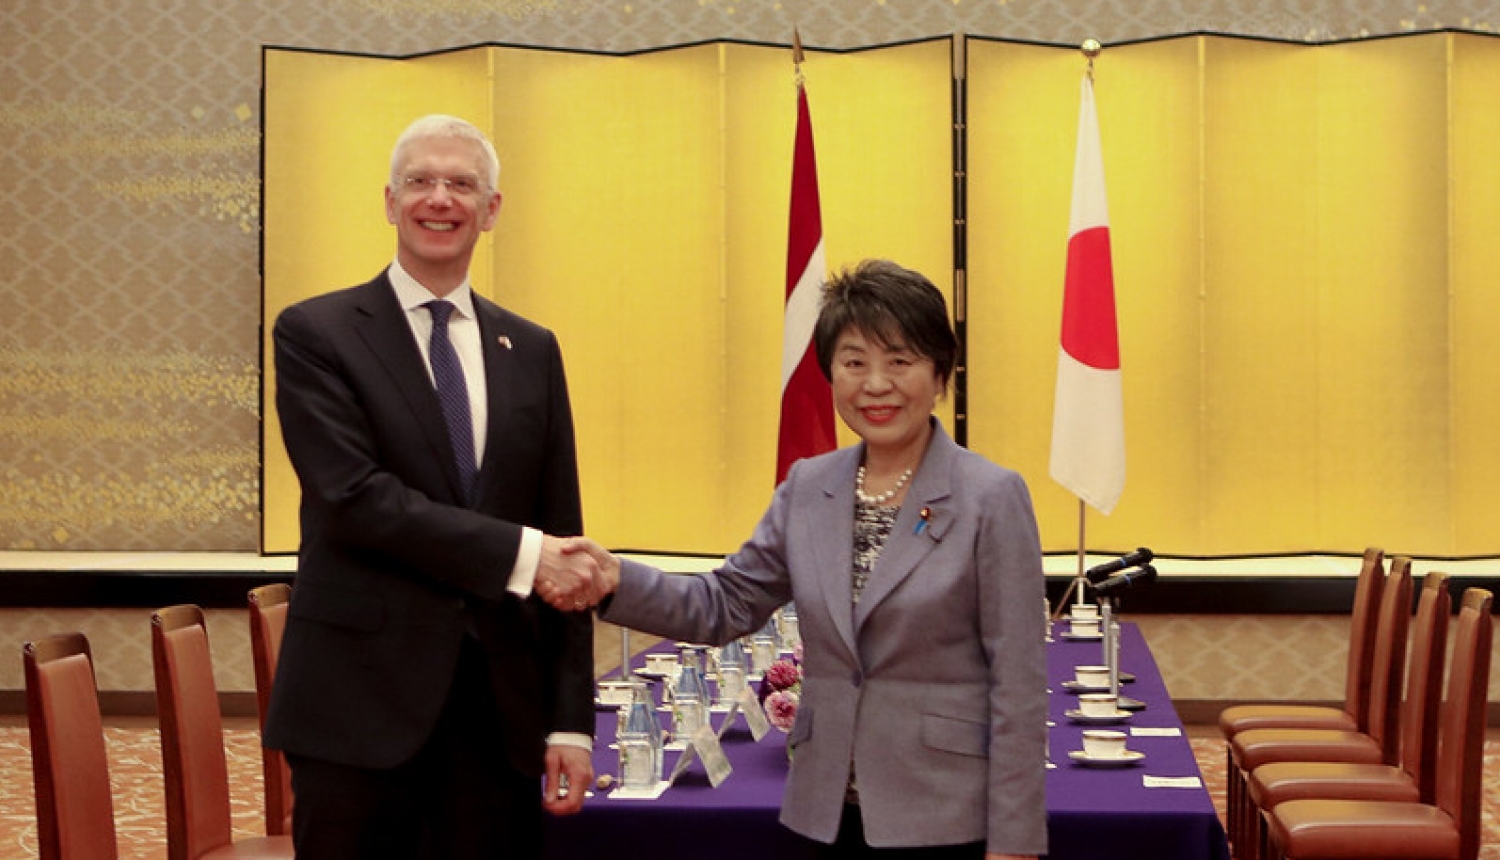 Latvijas ārlietu ministrs Krišjānis Kariņš tiekas ar Japānas ārlietu ministri Joko Kamikavu (Yoko Kamikawa)